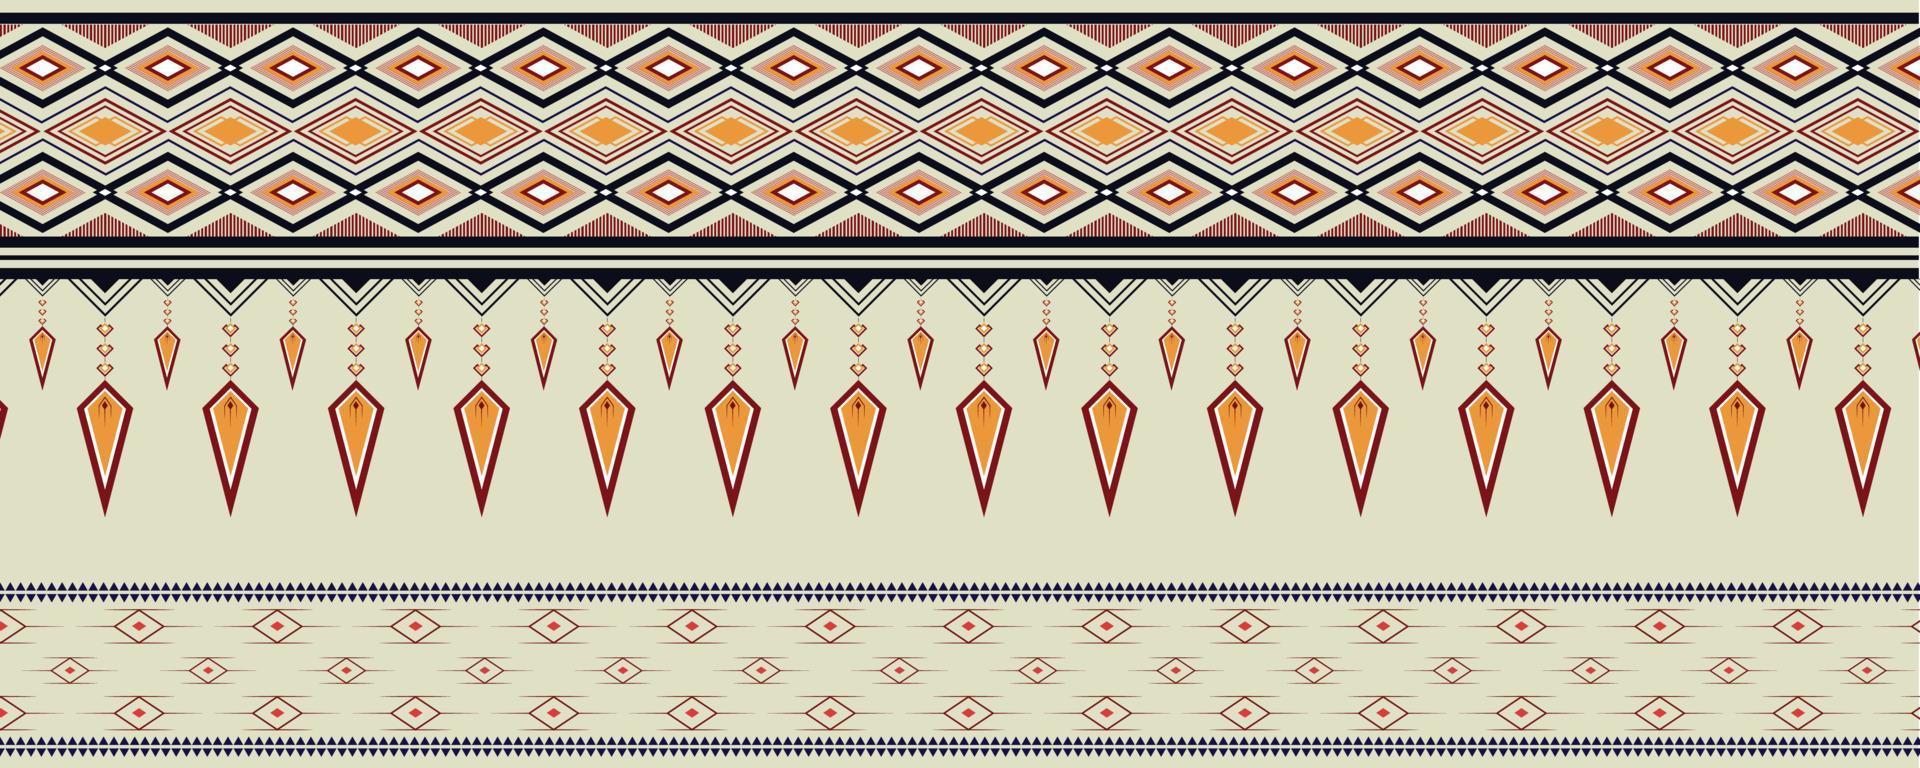 disegno vettoriale geometrico motivo etnico per materia prima, sfondo, abbigliamento, confezionamento, batik, tessuto.